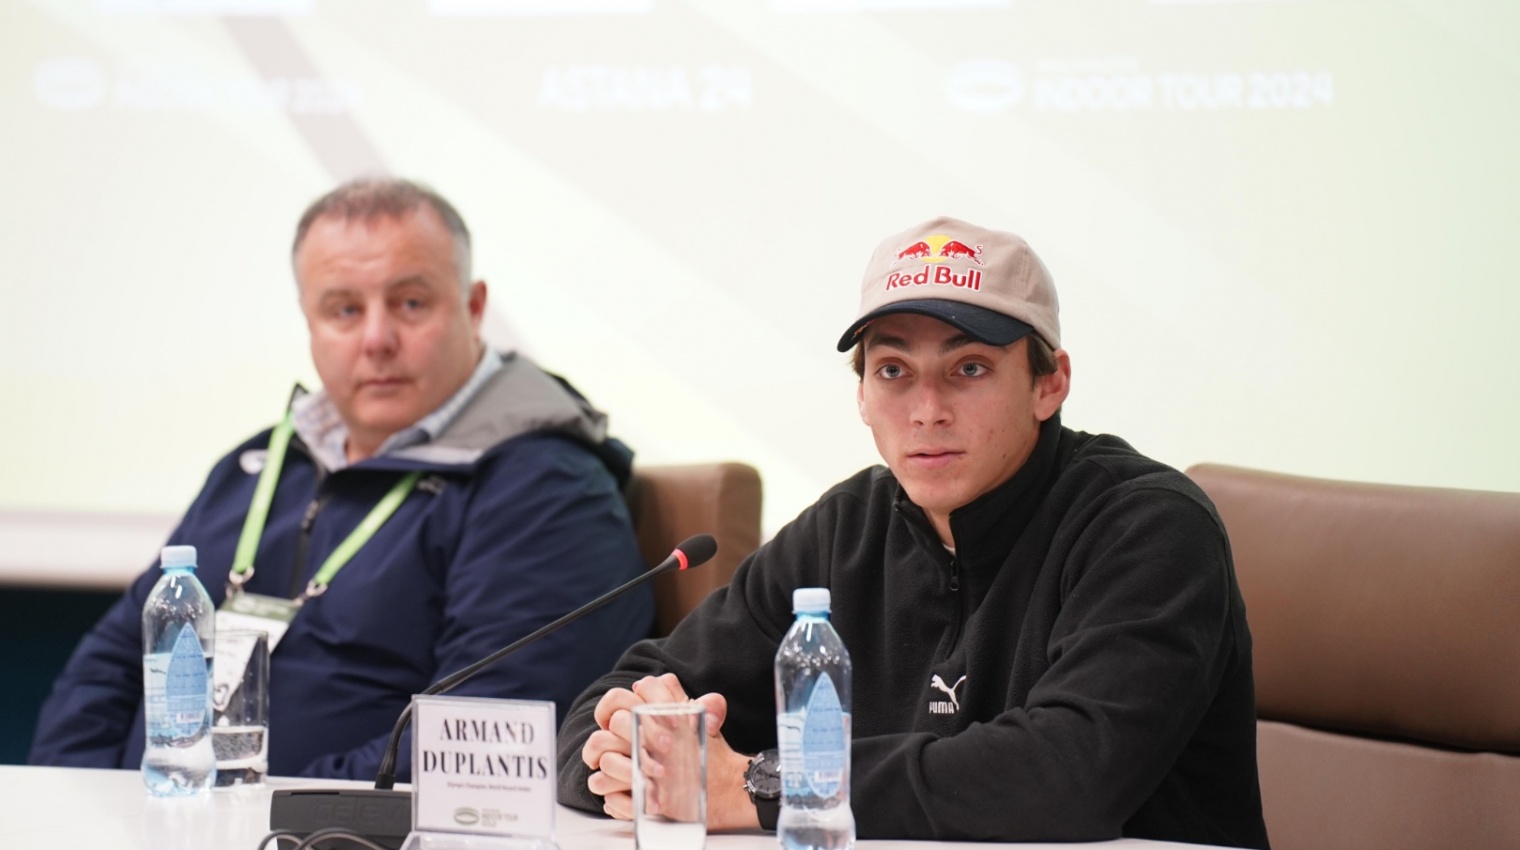 Сегодня состоялась пресс-конференция в преддверии Astana Indoor Meet